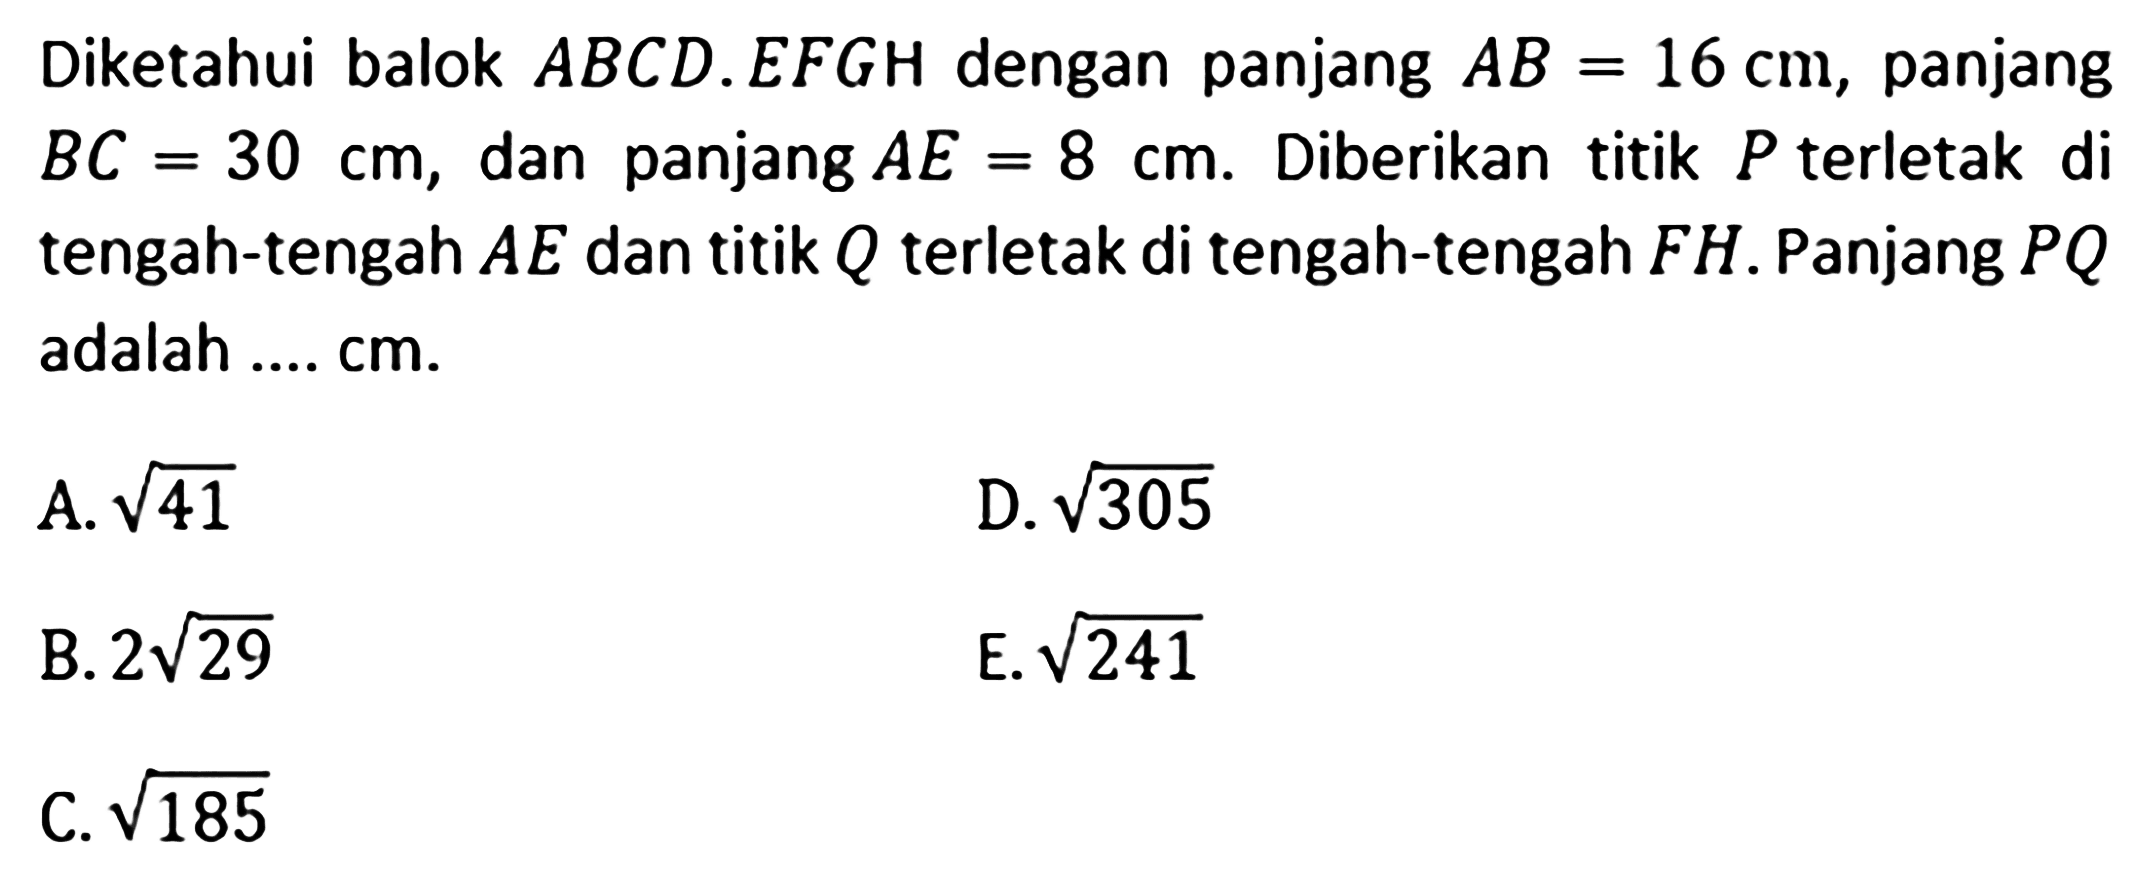 Diketahui balok ABCD.EFGH dengan panjang AB=16 cm, panjang BC=30 cm, dan panjang AE=8 cm, Diberikan titik P terletak di tengah-tengah AE dan titik Q terletak di tengah-tengah FH. Panjang PQ adalah .... cm A. akar(41) D. akar(305) B. 2akar(29) E. akar(241) C. akar(185)